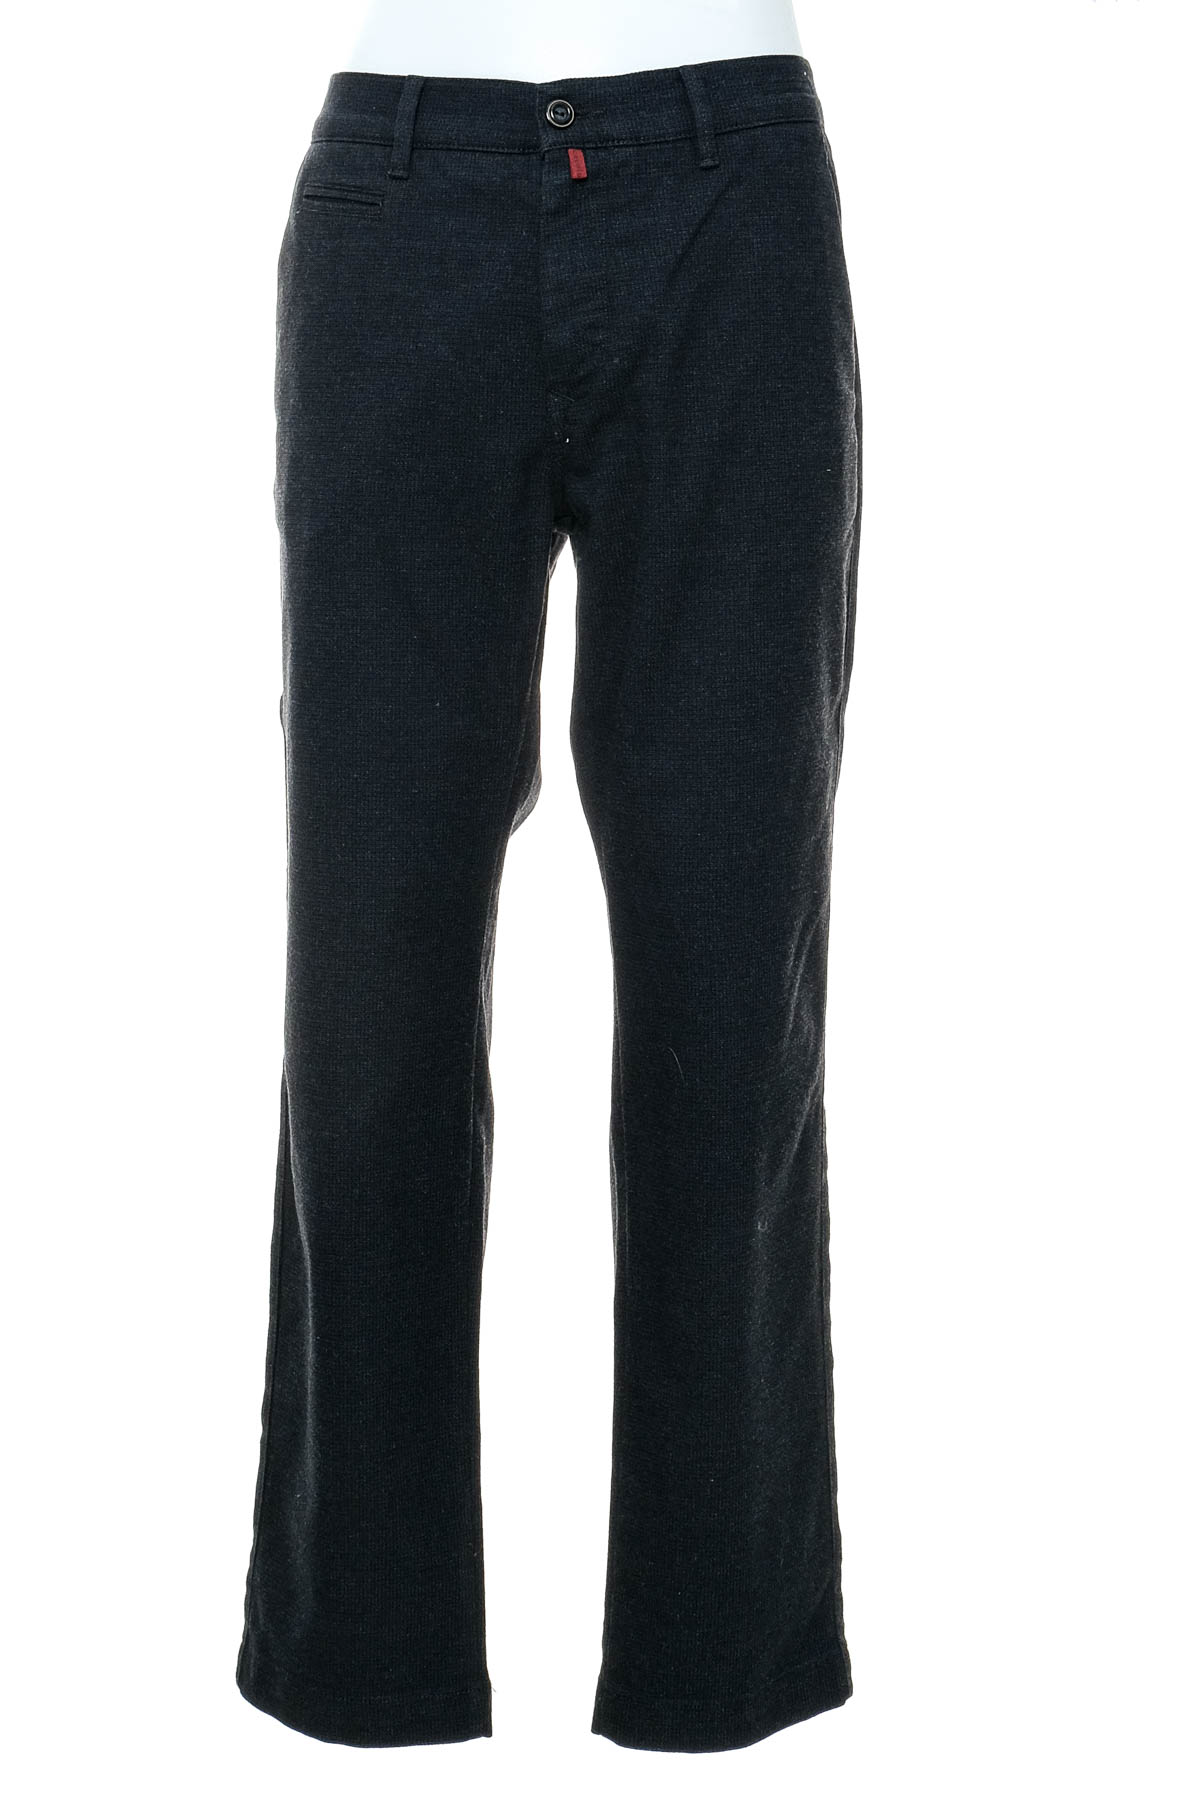 Pantalon pentru bărbați - Pierre Cardin - 0